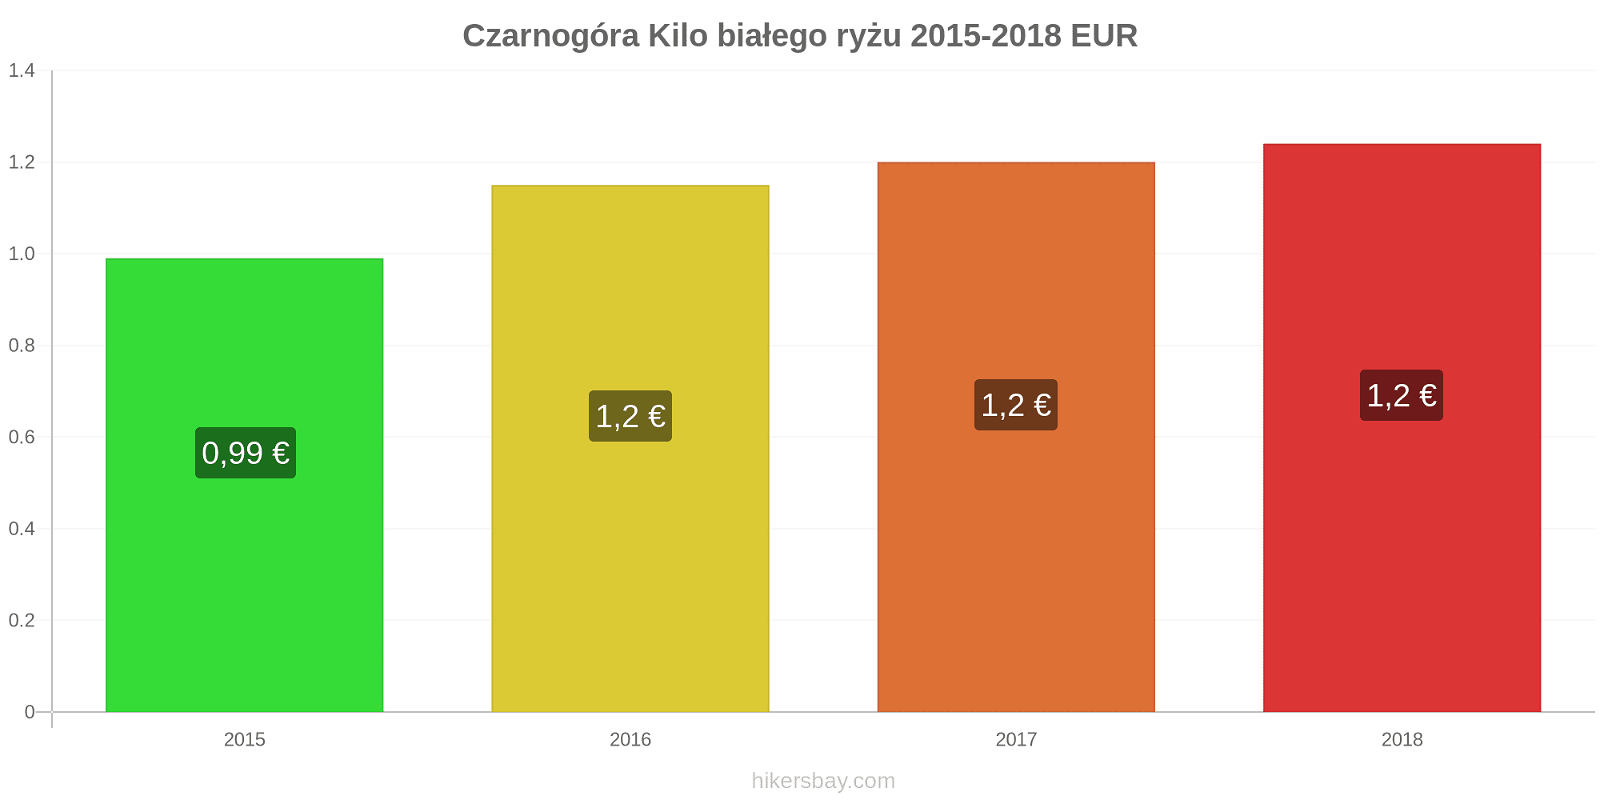 Czarnogóra zmiany cen Kilo białego ryżu hikersbay.com